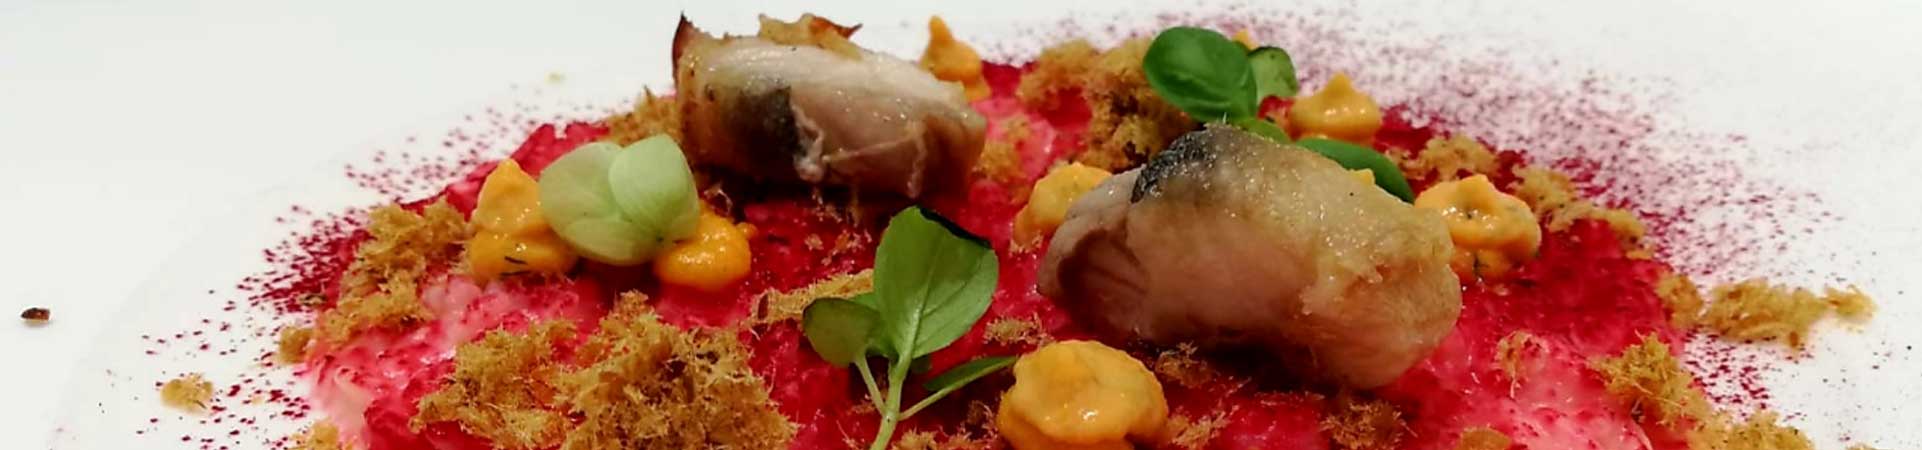  The best cuisine in Umbria: Tipico Osteria dei Sensi & Locanda del Capitano -  Restaurants in Montone, Umbria Sharing Restaurant Italy